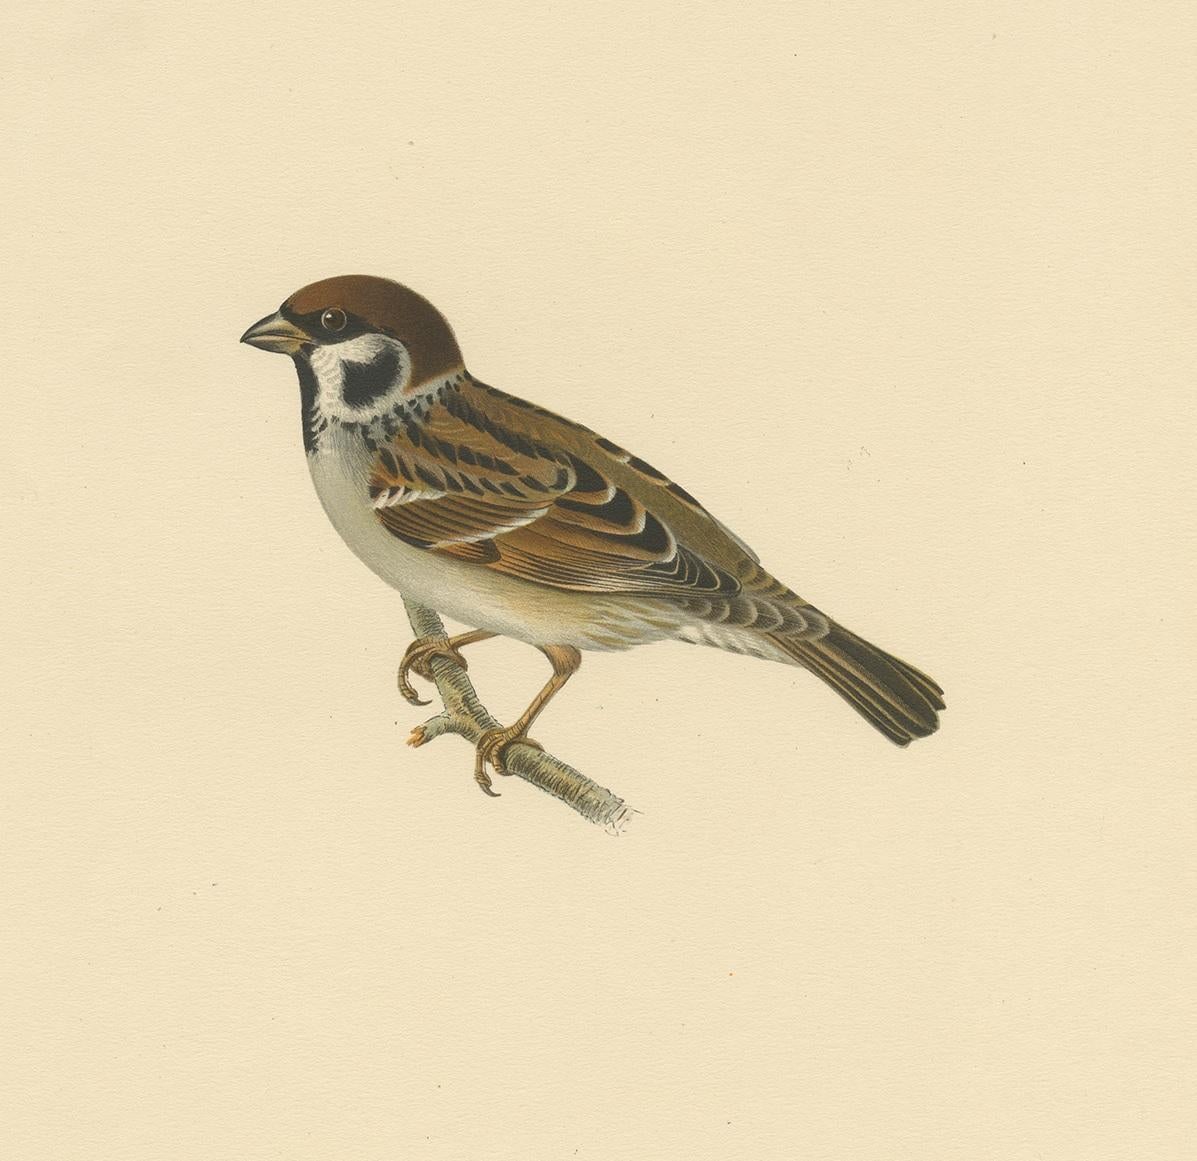 Antique bird print titled 'Passer Montanus'. Old bird print depicting the Eurasian tree sparrow. This print orginates from 'Svenska Foglar Efter Naturen Och Pa Stenritade' by Magnus von Wright.